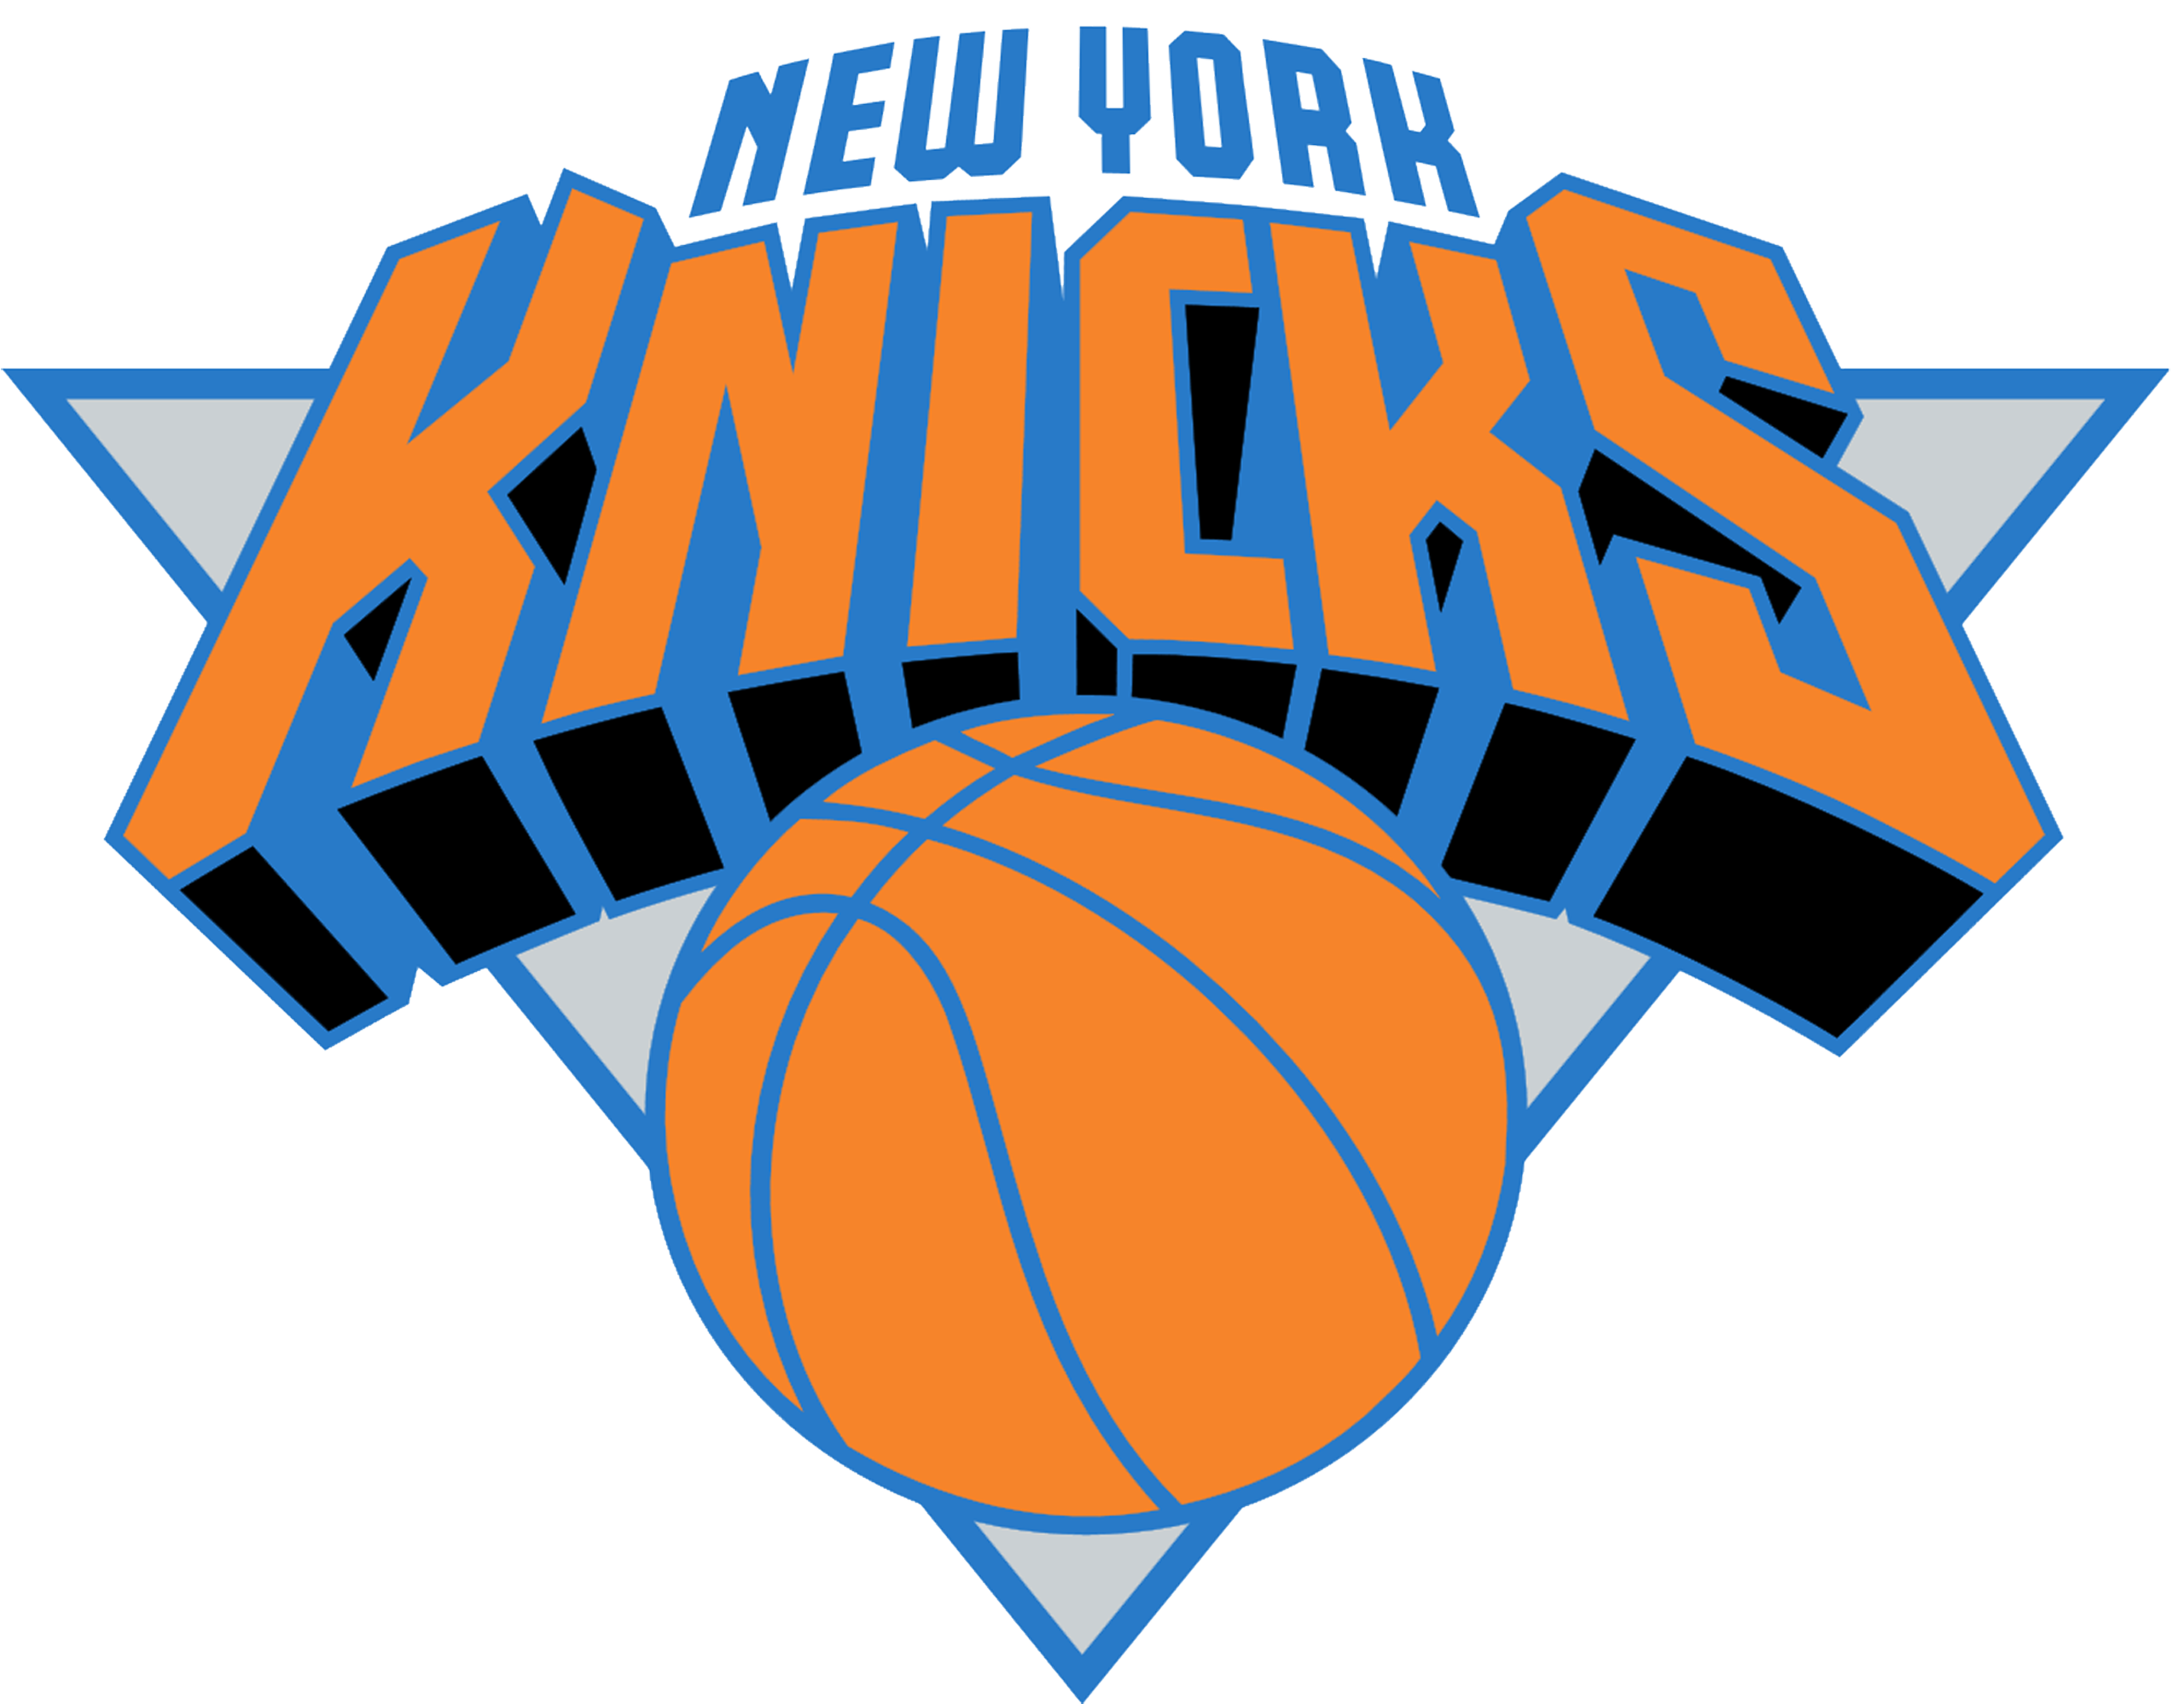 NEW YORK KNICKS Basketball Nba logo wallpaper over white Wallpaper